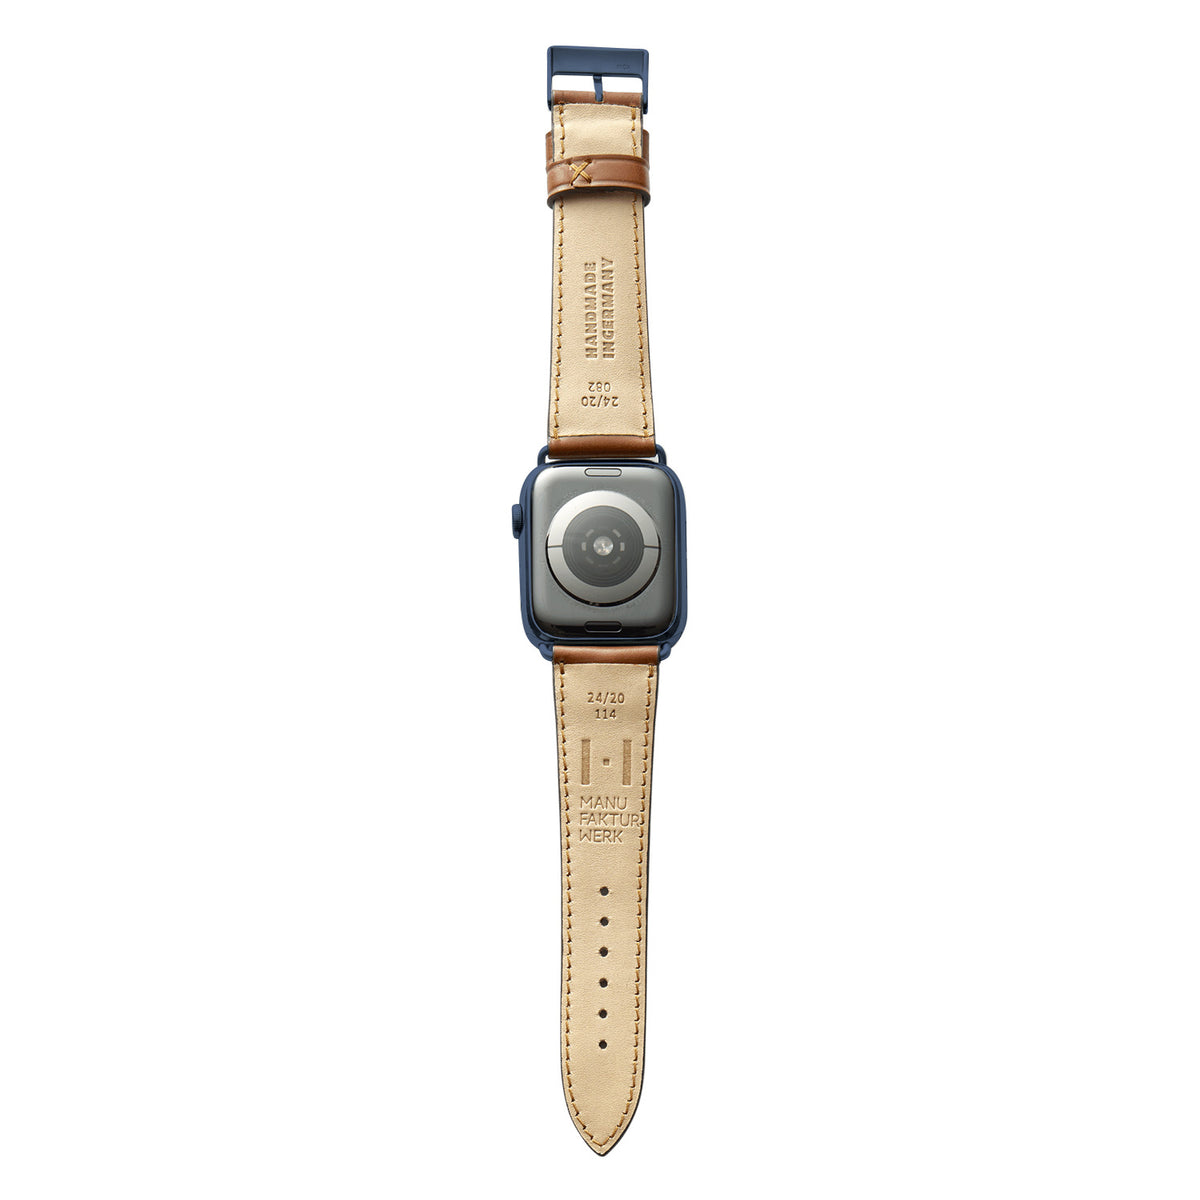 Cinturino in pelle per Apple Watch realizzato in Shell Cordovan &quot;WINTERHUDE&quot; - Cognac